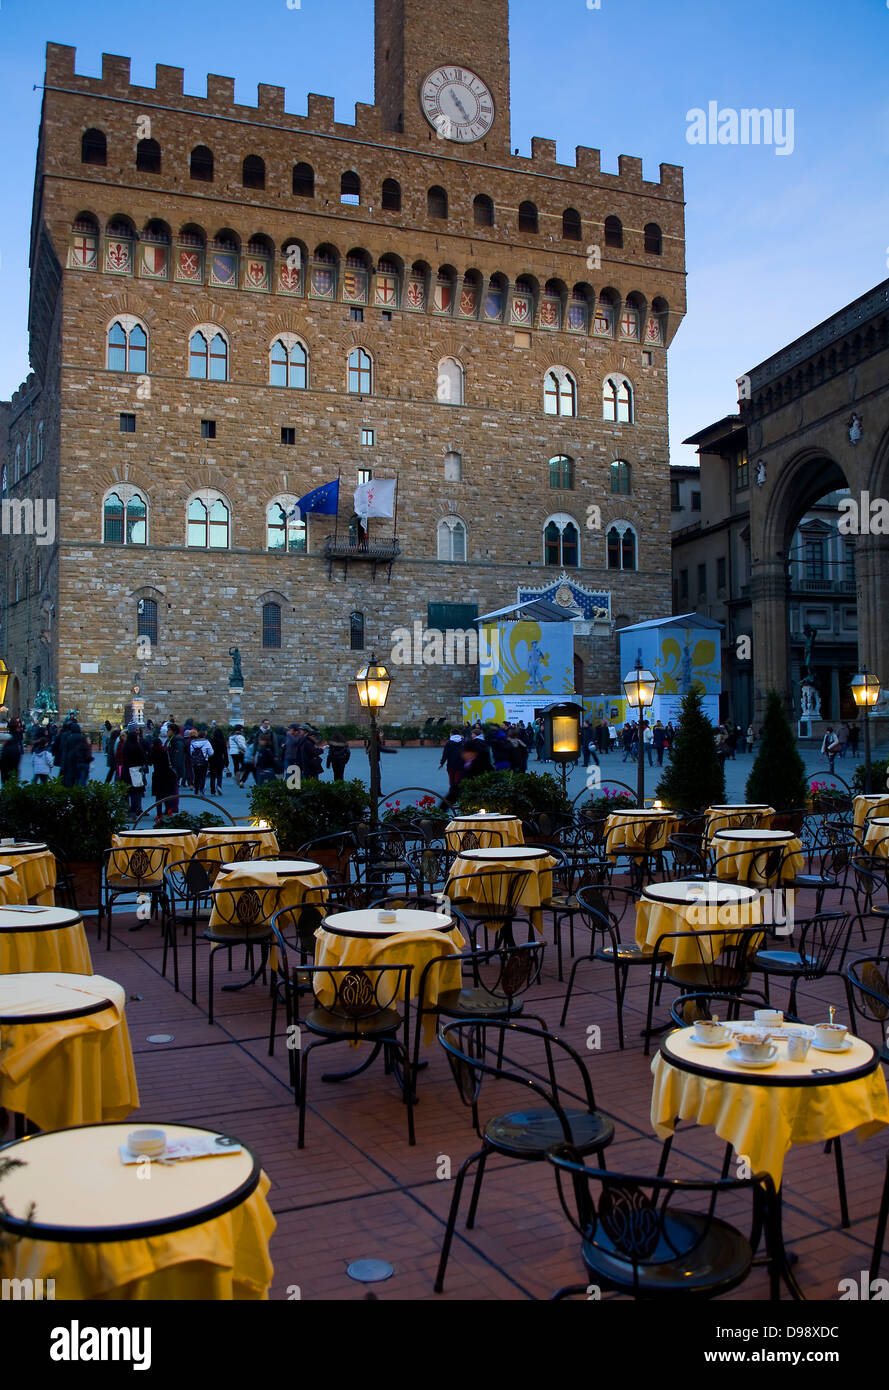 Palazzo Vecchio and Piazza della Signoria.Florence, Tuscany region, Italy, Europe Stock Photo